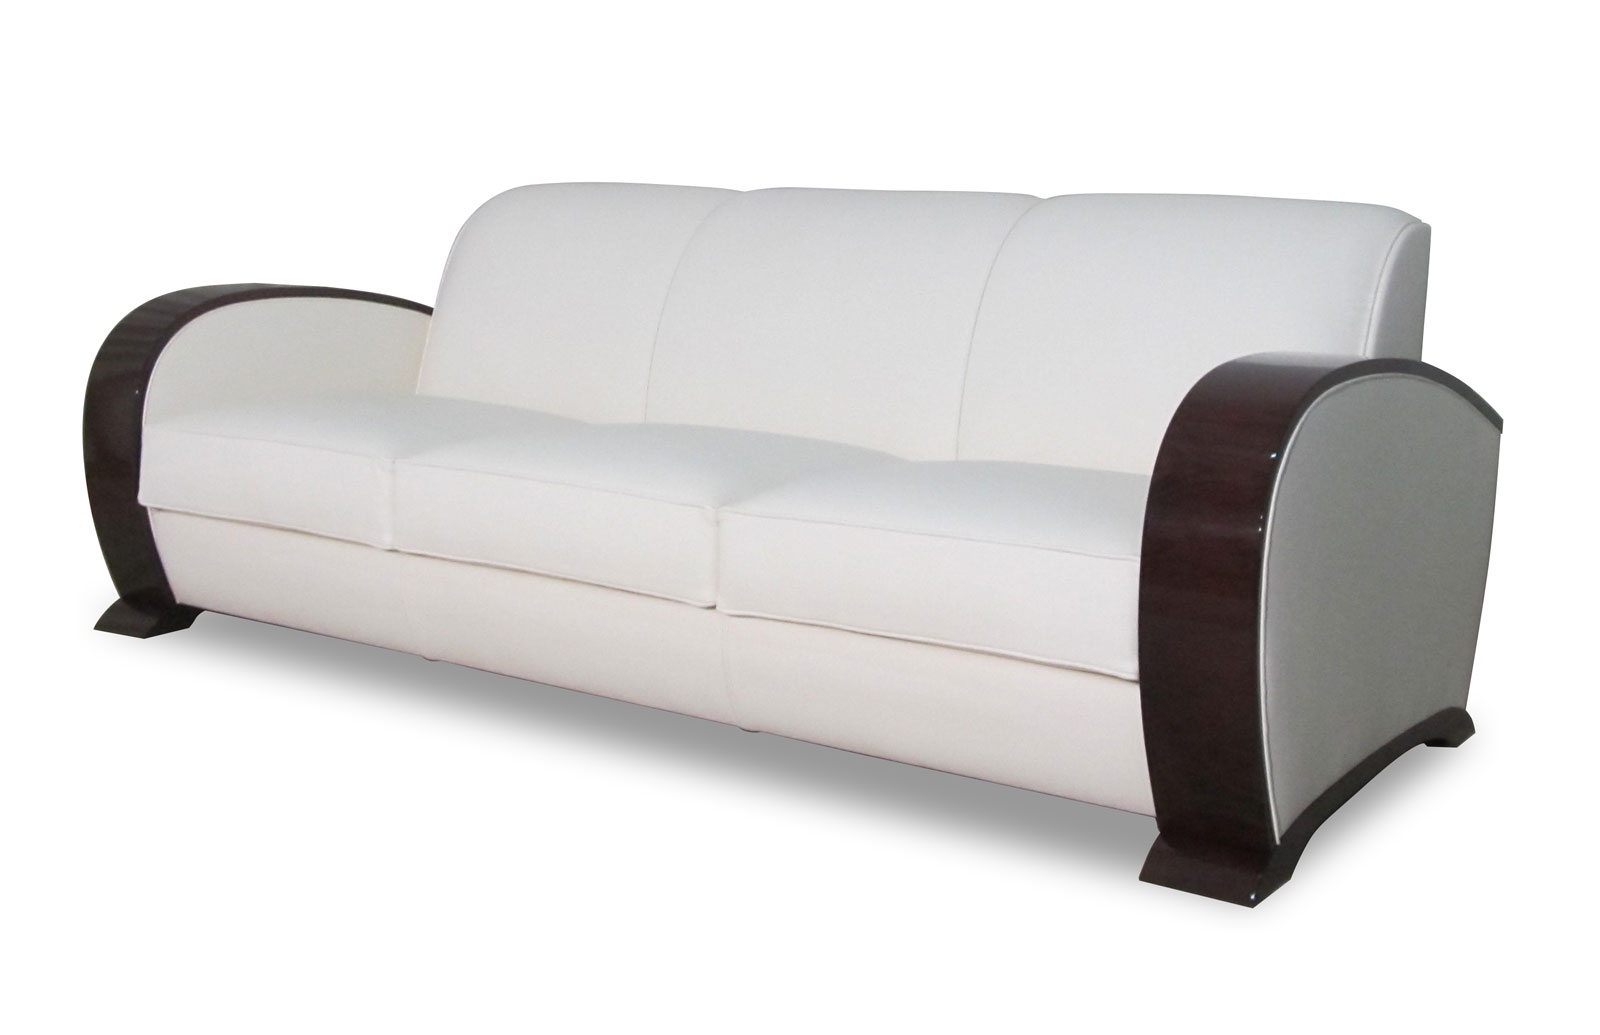 Product Art deco luxury sofas 